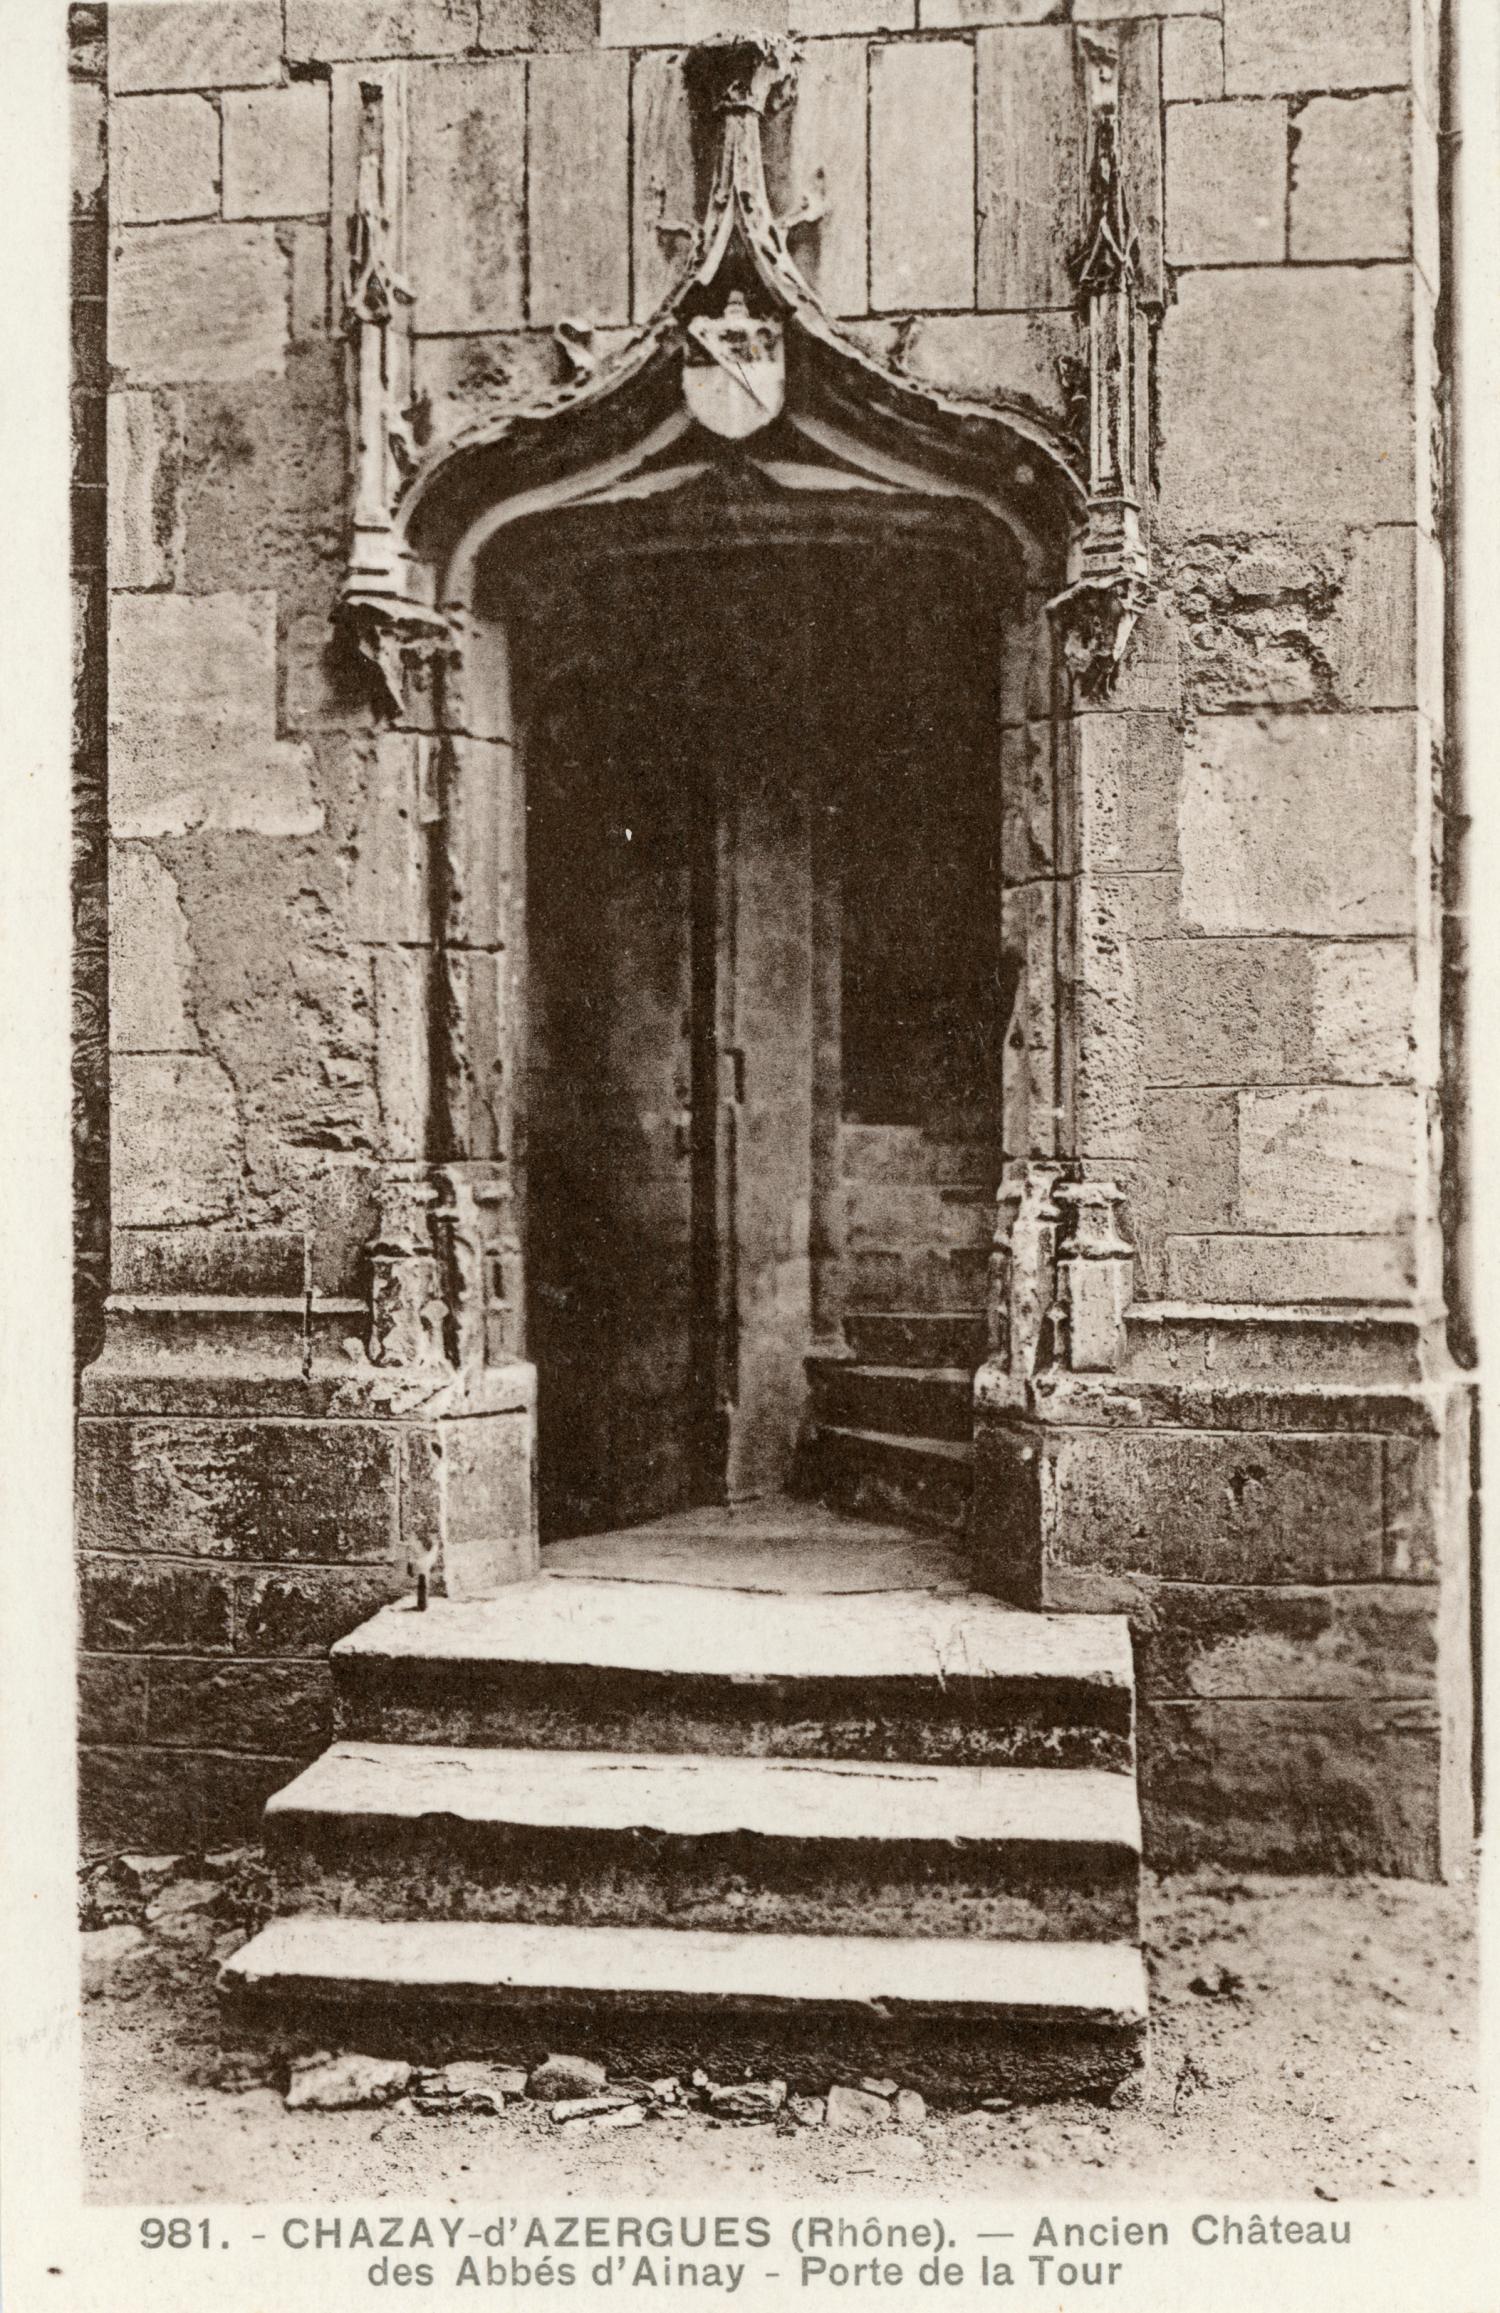 Chazay-d'Azergues (Rhône). - Ancien château des Abbés d'Ainay. - Porte de la tour